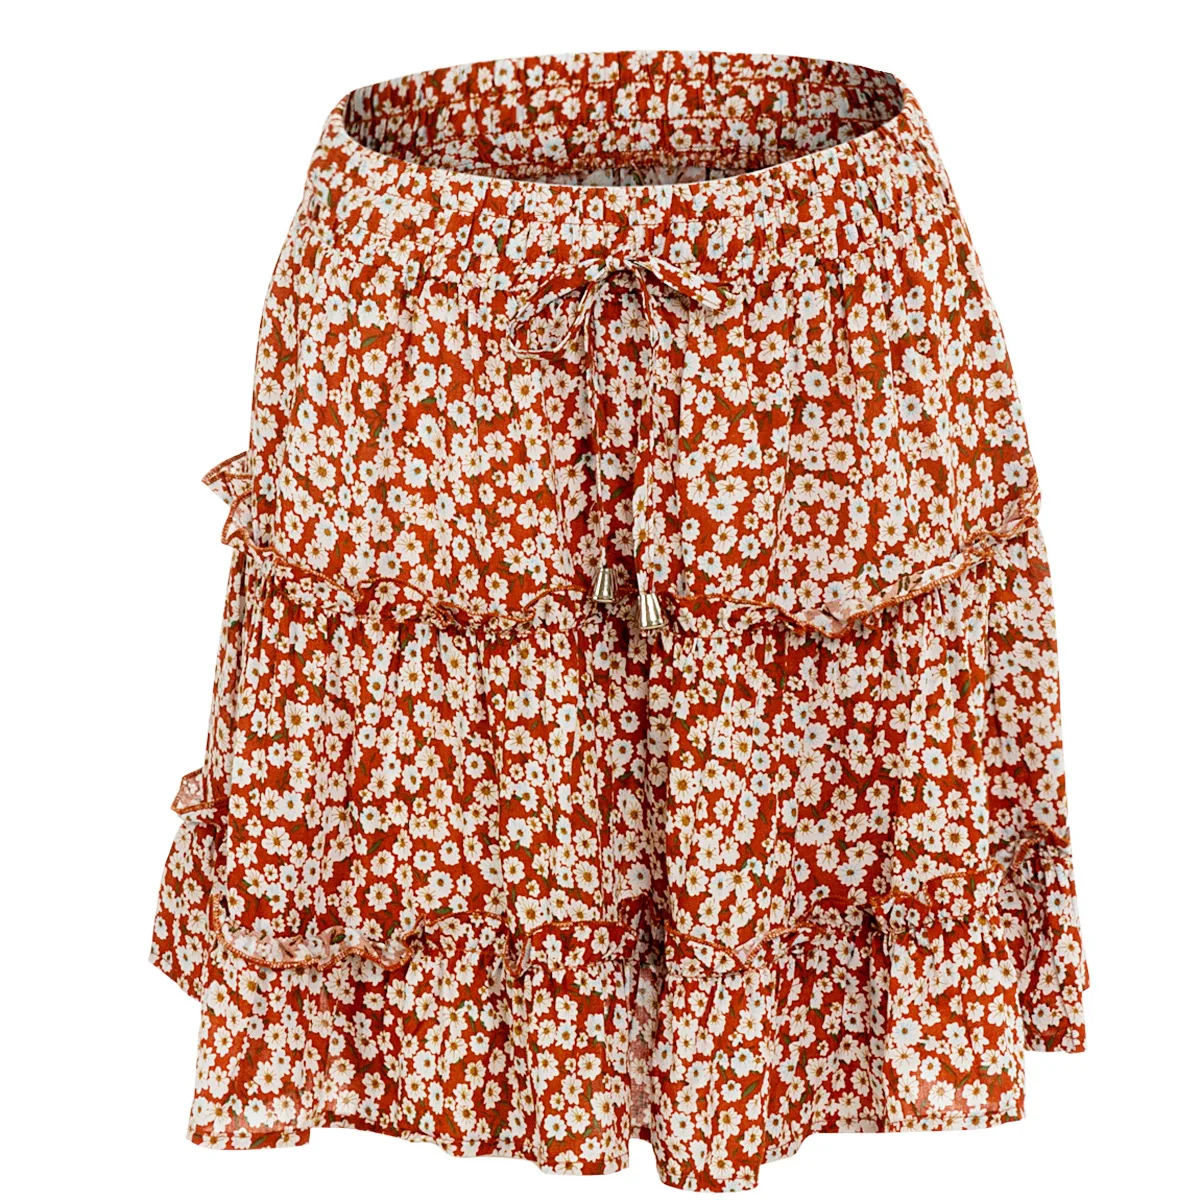 Женская юбка с завышенной талией в виде листьев лотоса, длиной до середины голени, с принтом, Пляжная трапециевидная короткая юбка